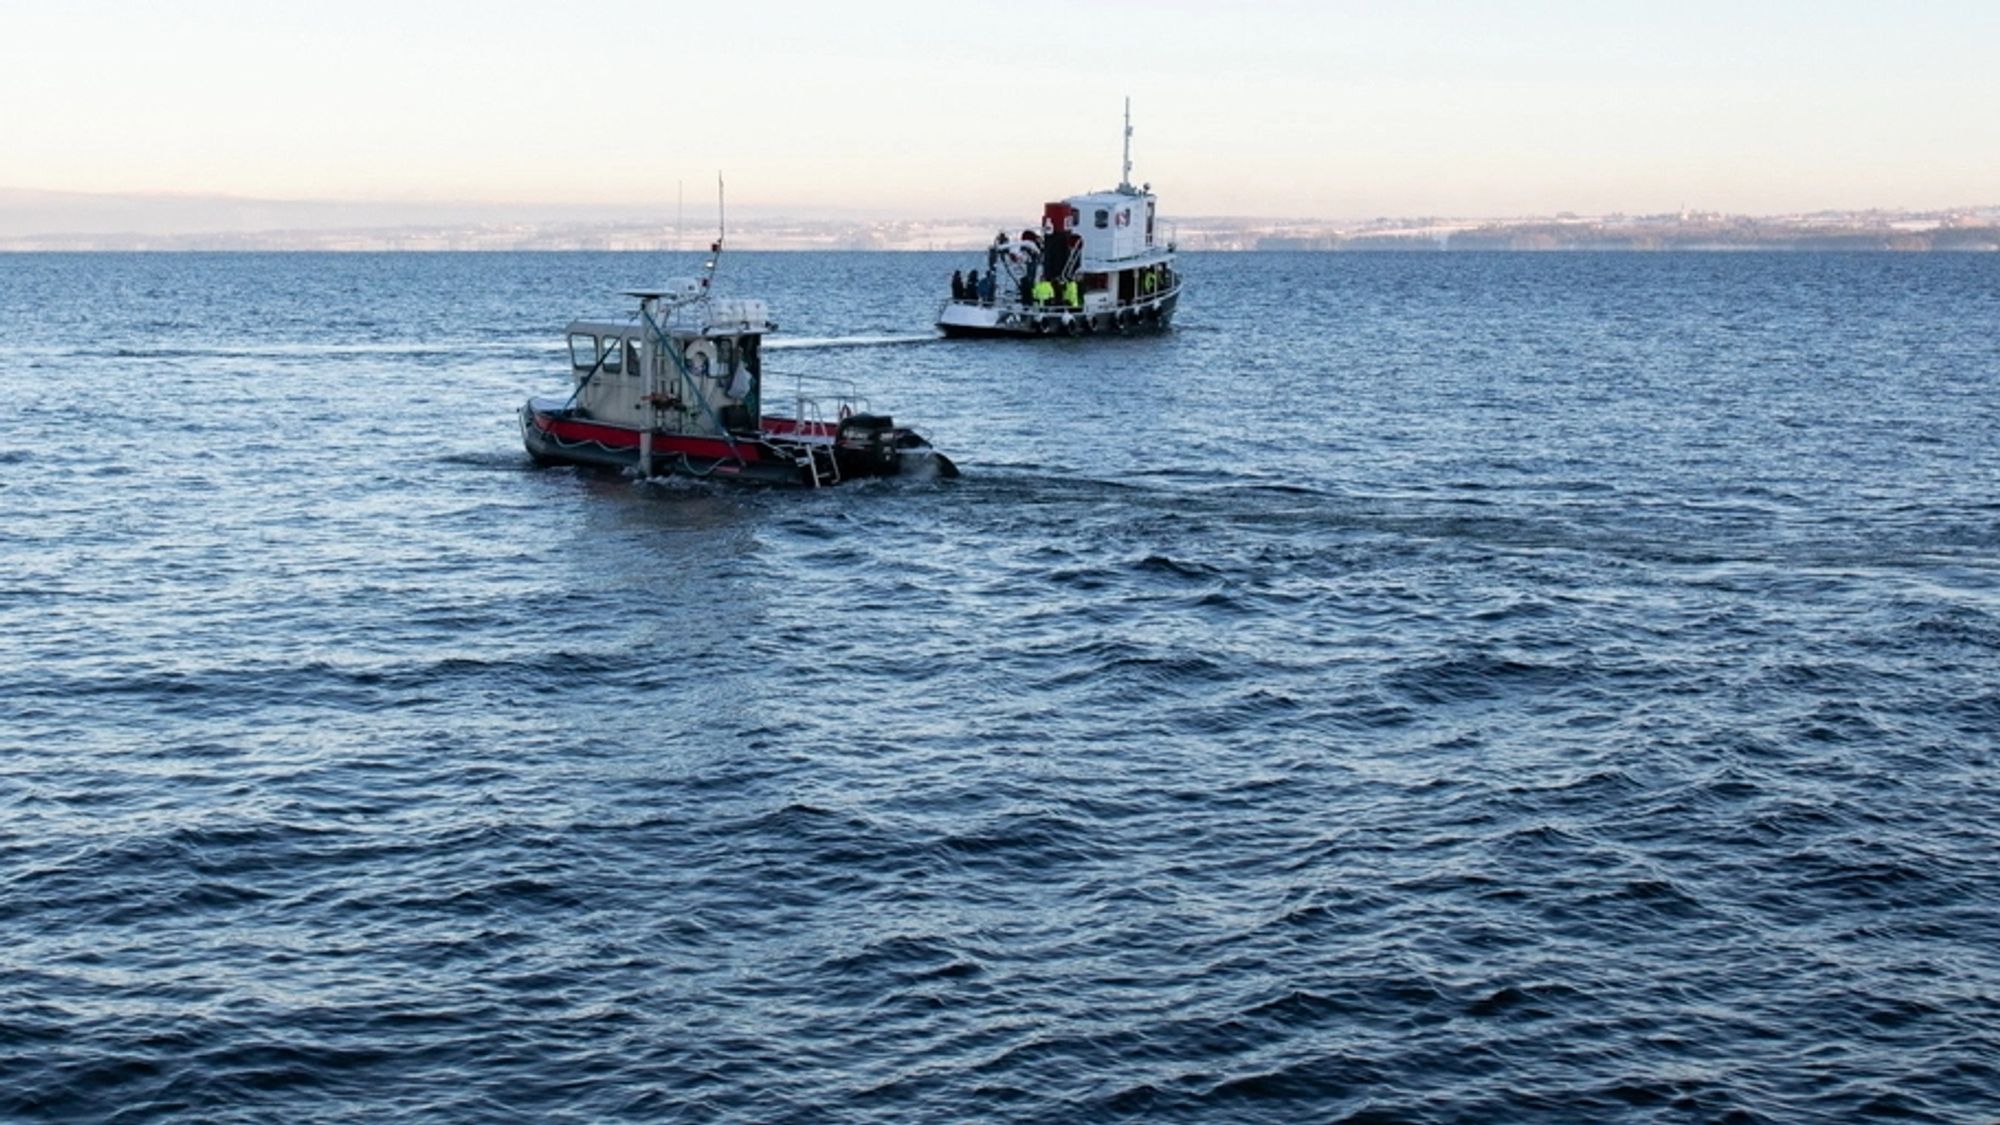 Disse båtene er ikke ute på havet, men derimot ute på Norges største innsjø, Mjøsa. Forskerne ombord er i ferd med å sende ned undervannsroboter for å samle inn data. Dette skal gi oss ny kunnskap både om historien og om dagens situasjon.